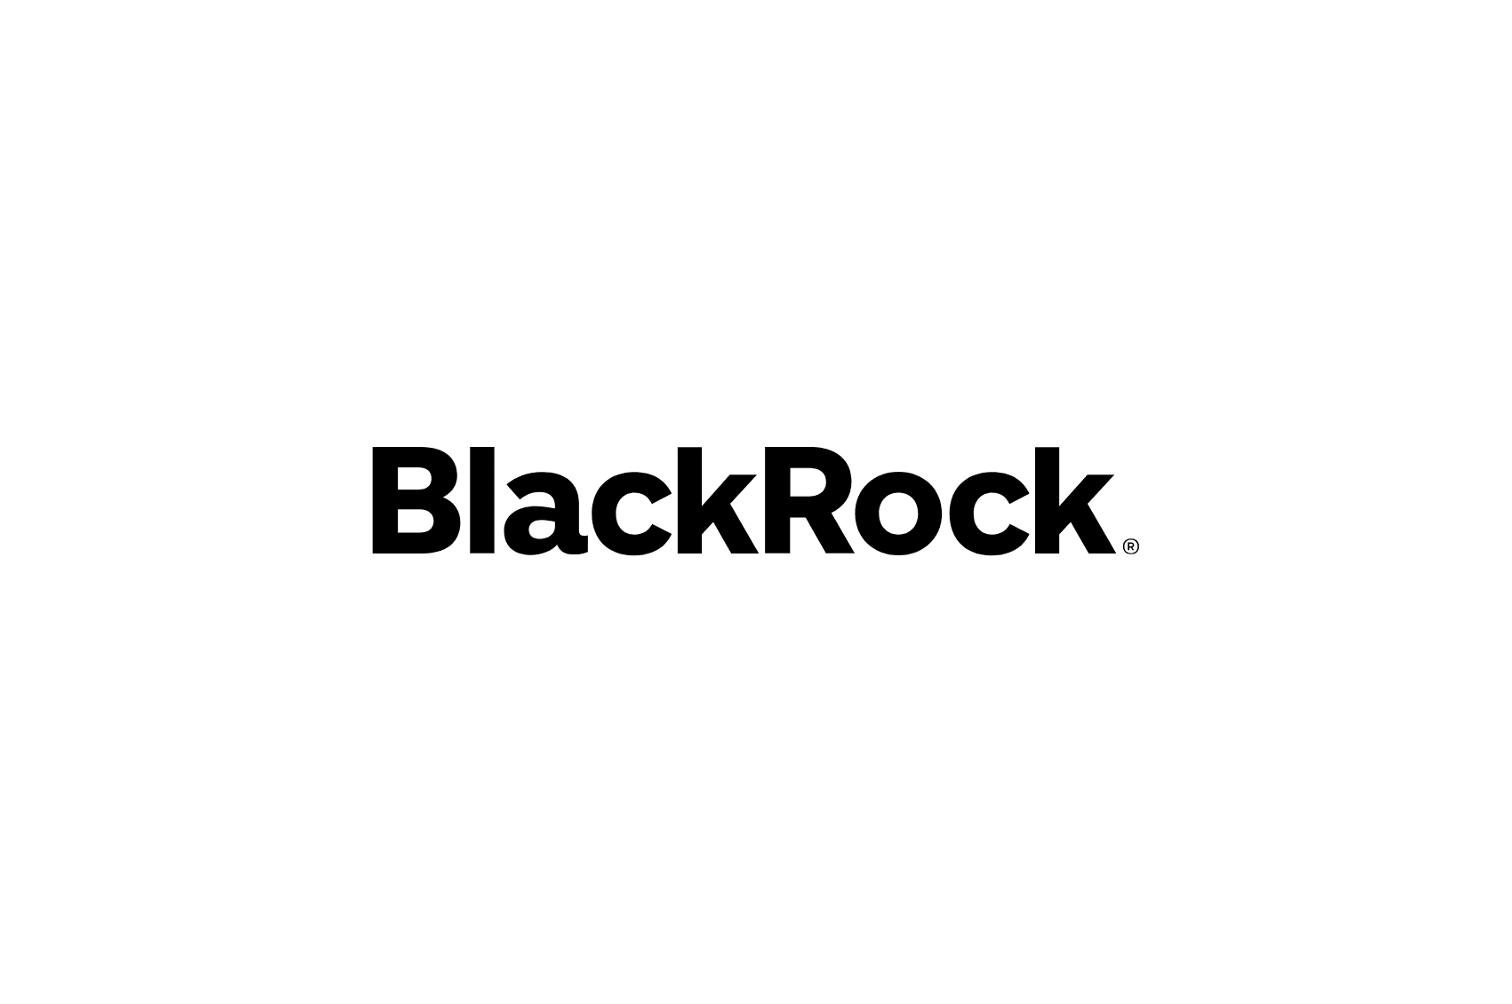 BlackRock pèse désormais plus de 8100 milliards d'euros